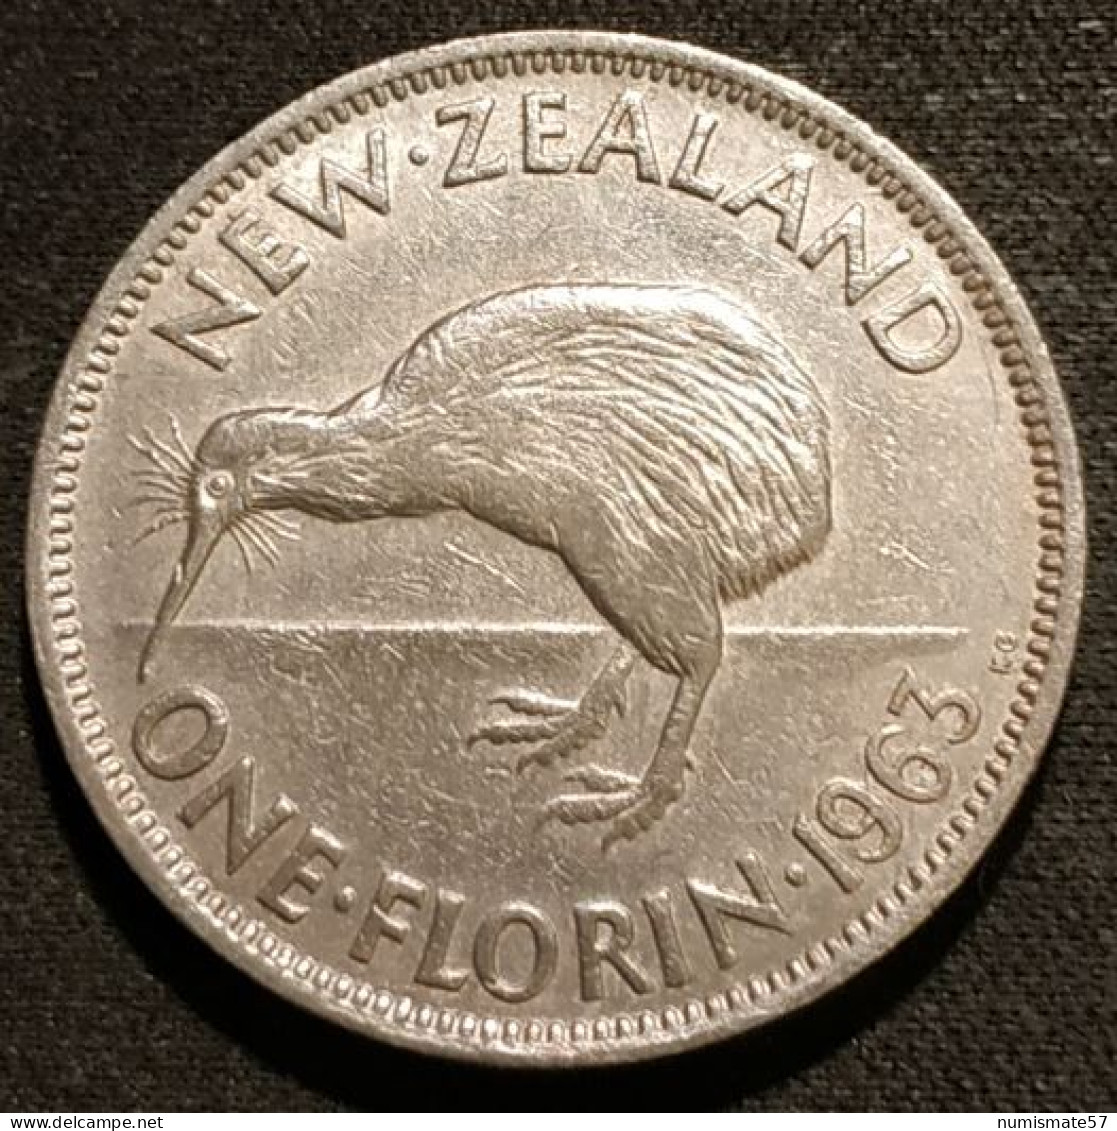 RARE - NOUVELLE ZELANDE - NEW ZEALAND - ONE - 1 FLORIN 1963 - Elisabeth II - KM 28.2 - Nieuw-Zeeland